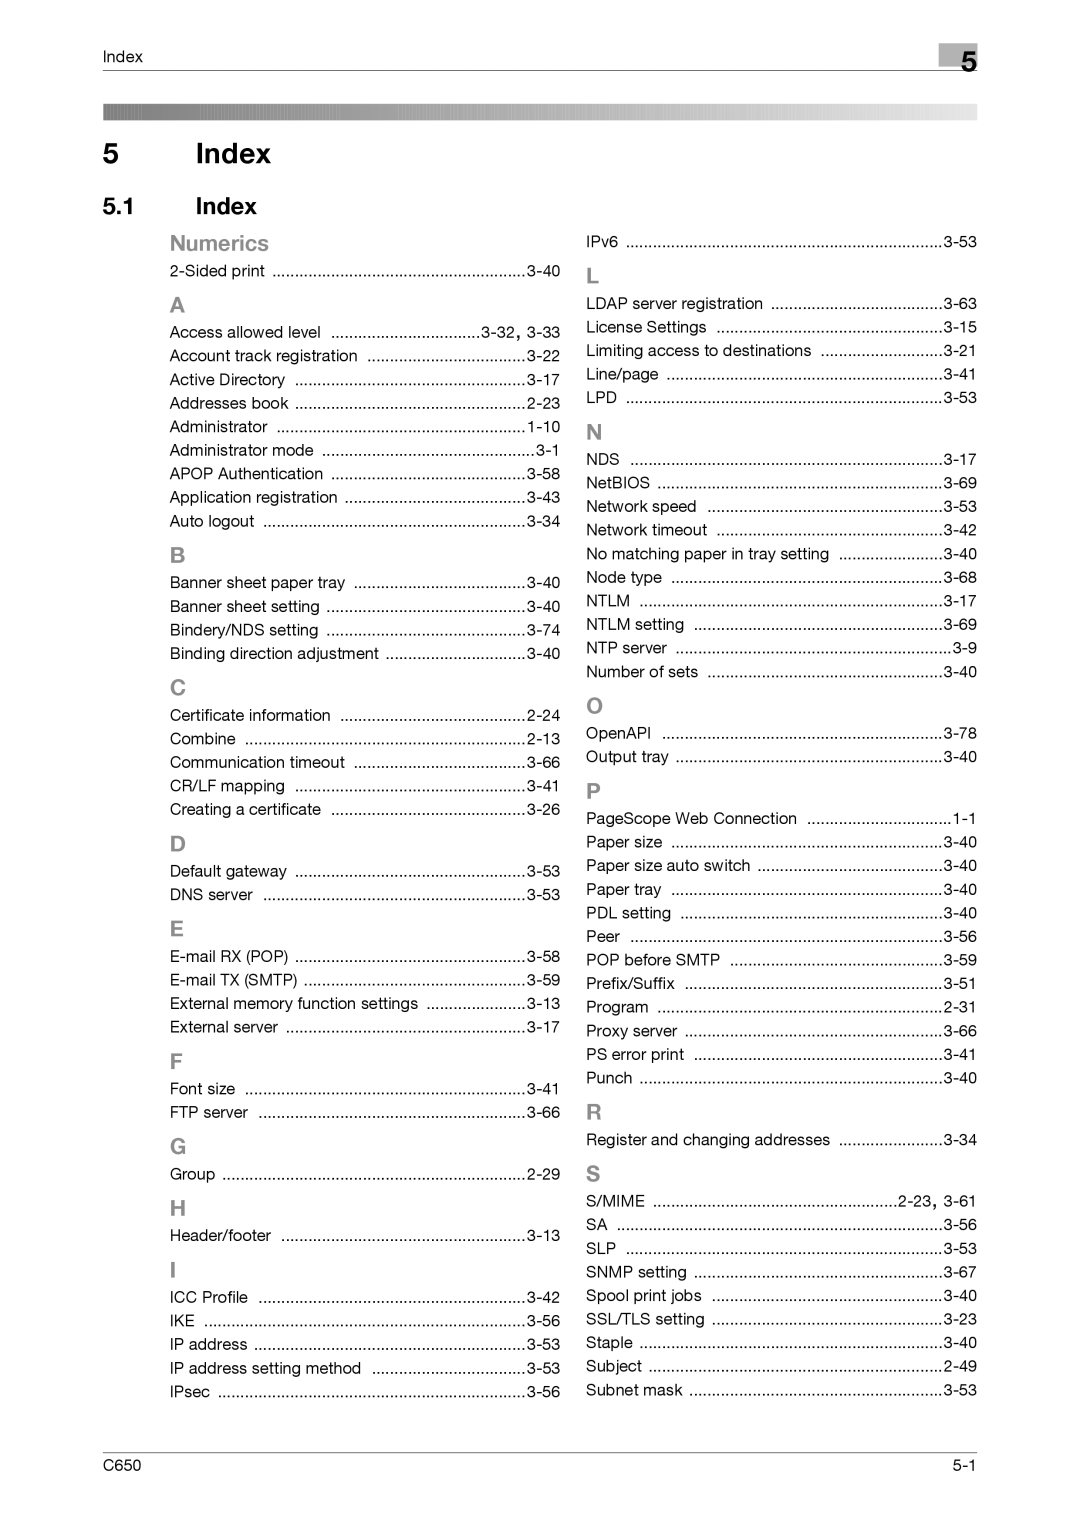 Konica Minolta C650 manual Index, Numerics 